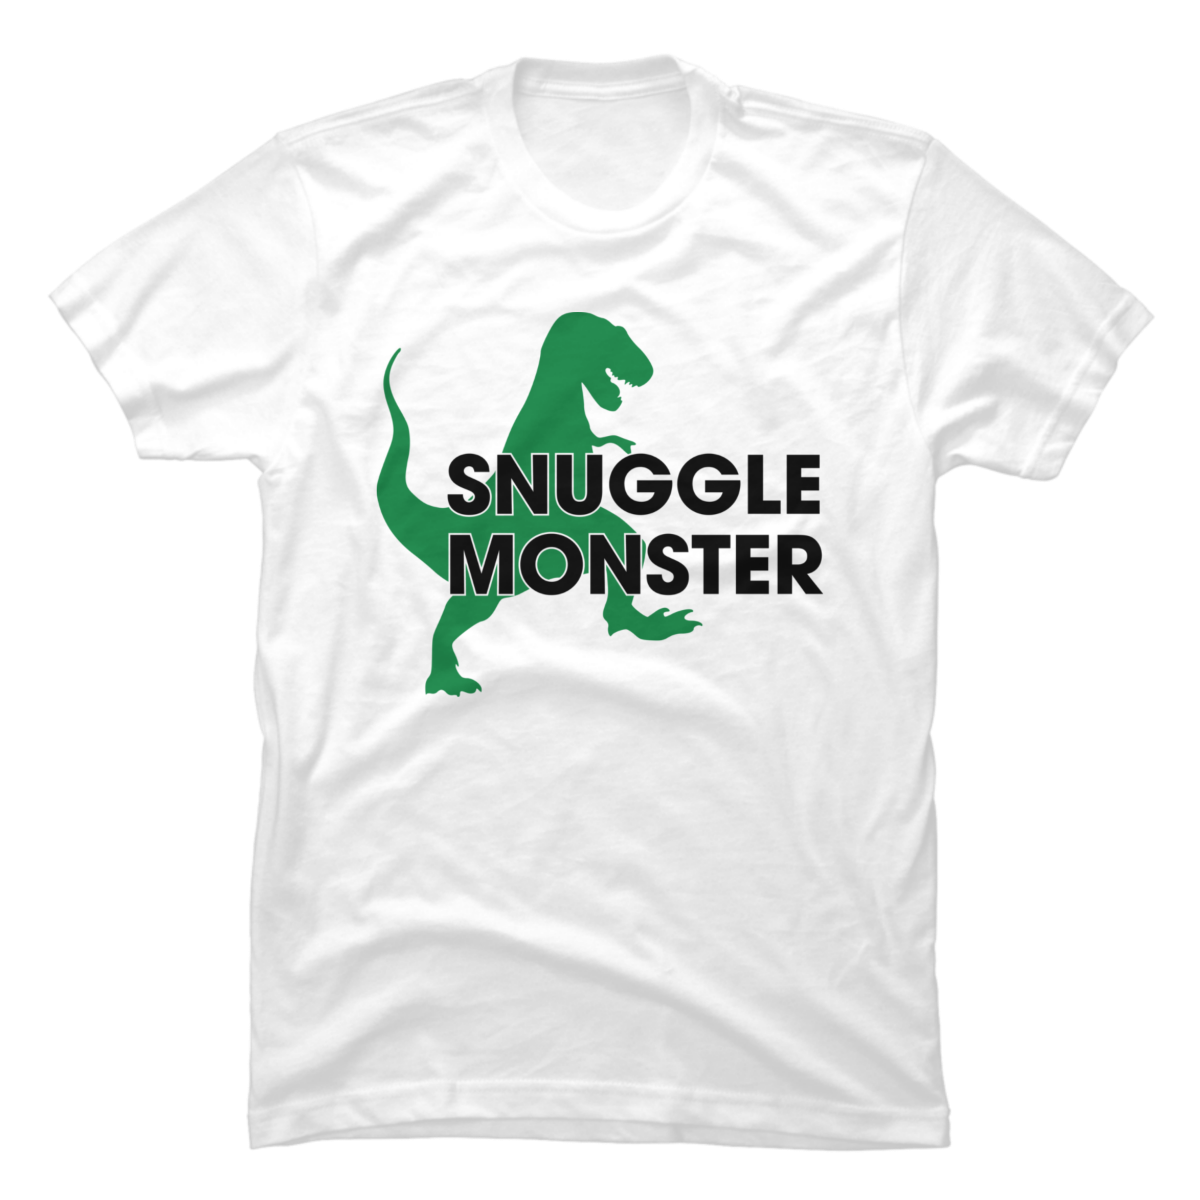 snuggle monster t shirt